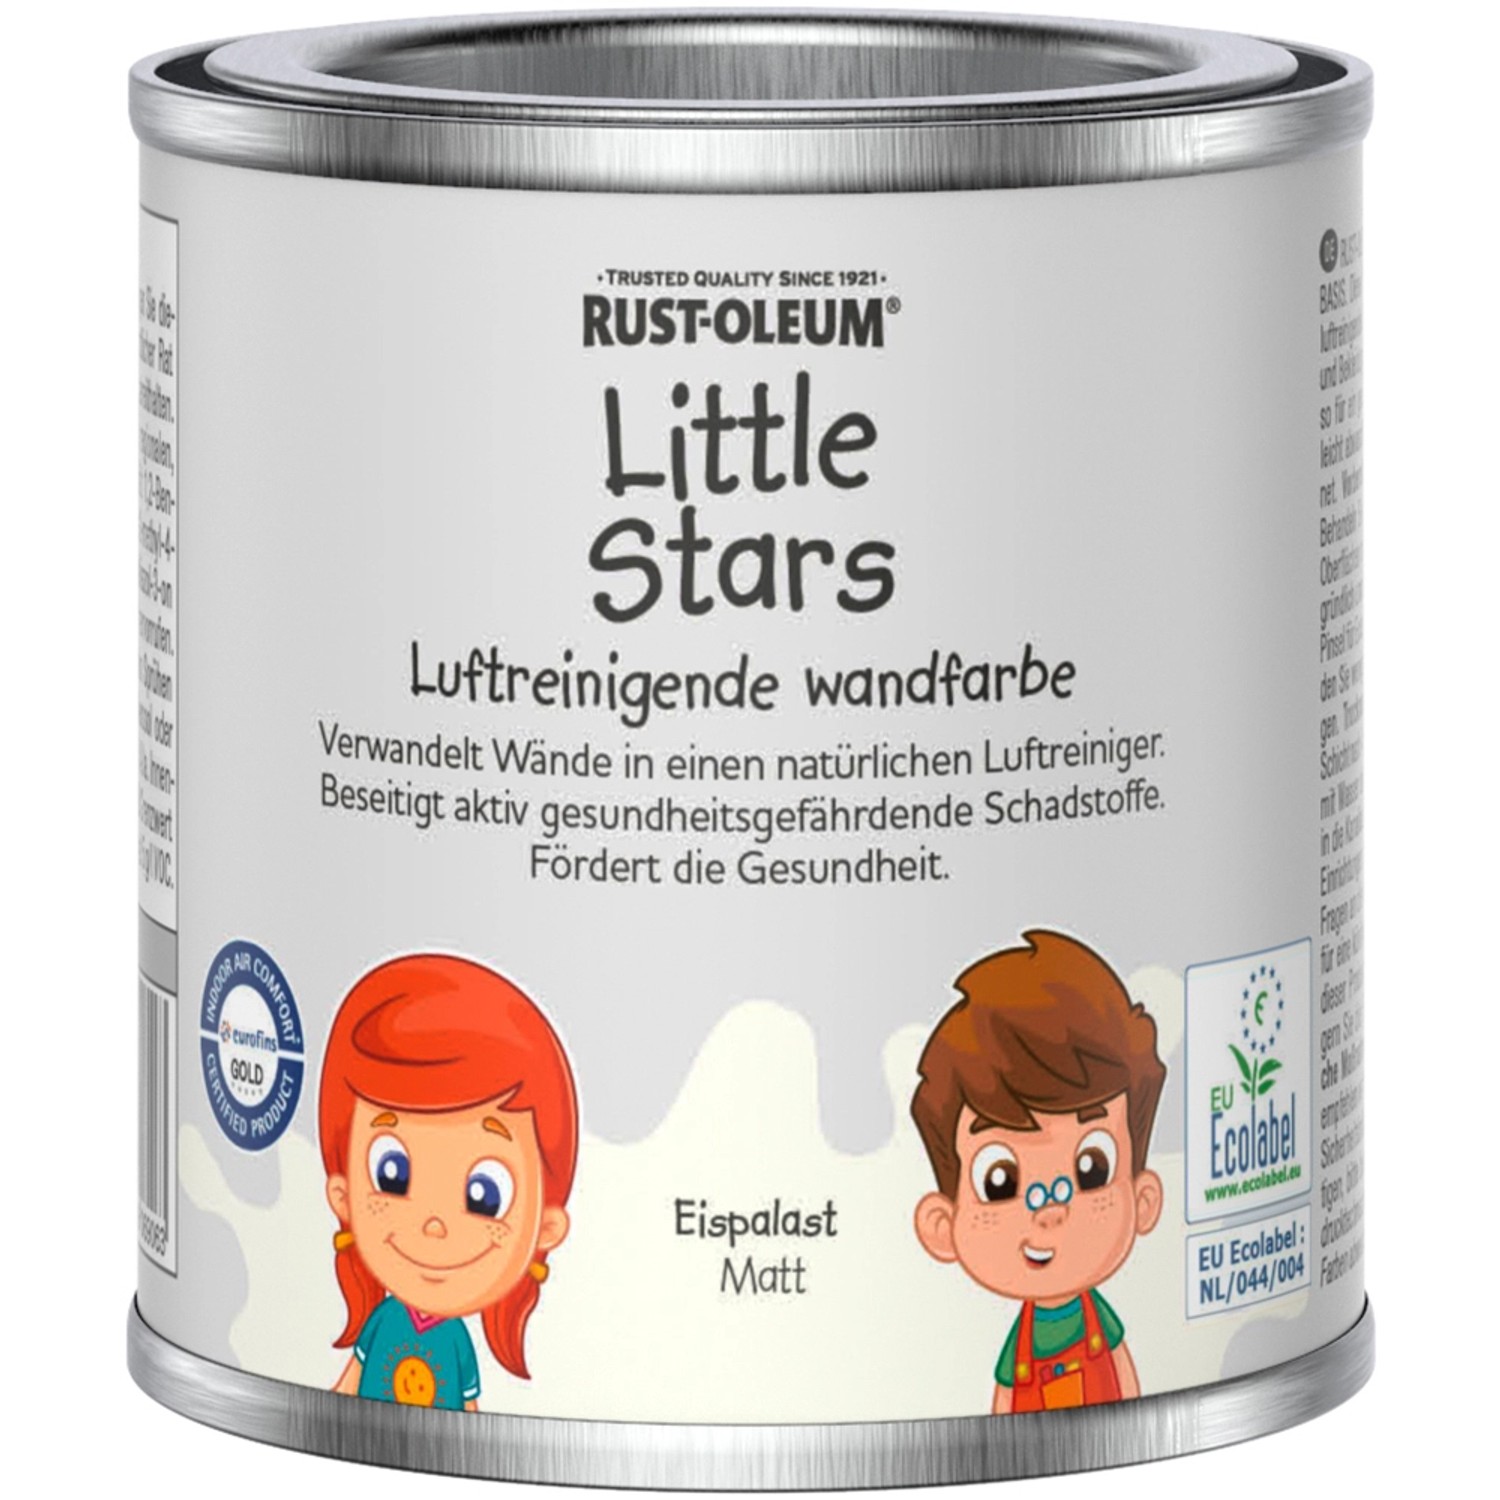 Rust-Oleum Little Stars Luftreinigende Wandfarbe Eispalast 125 ml von Rust-Oleum